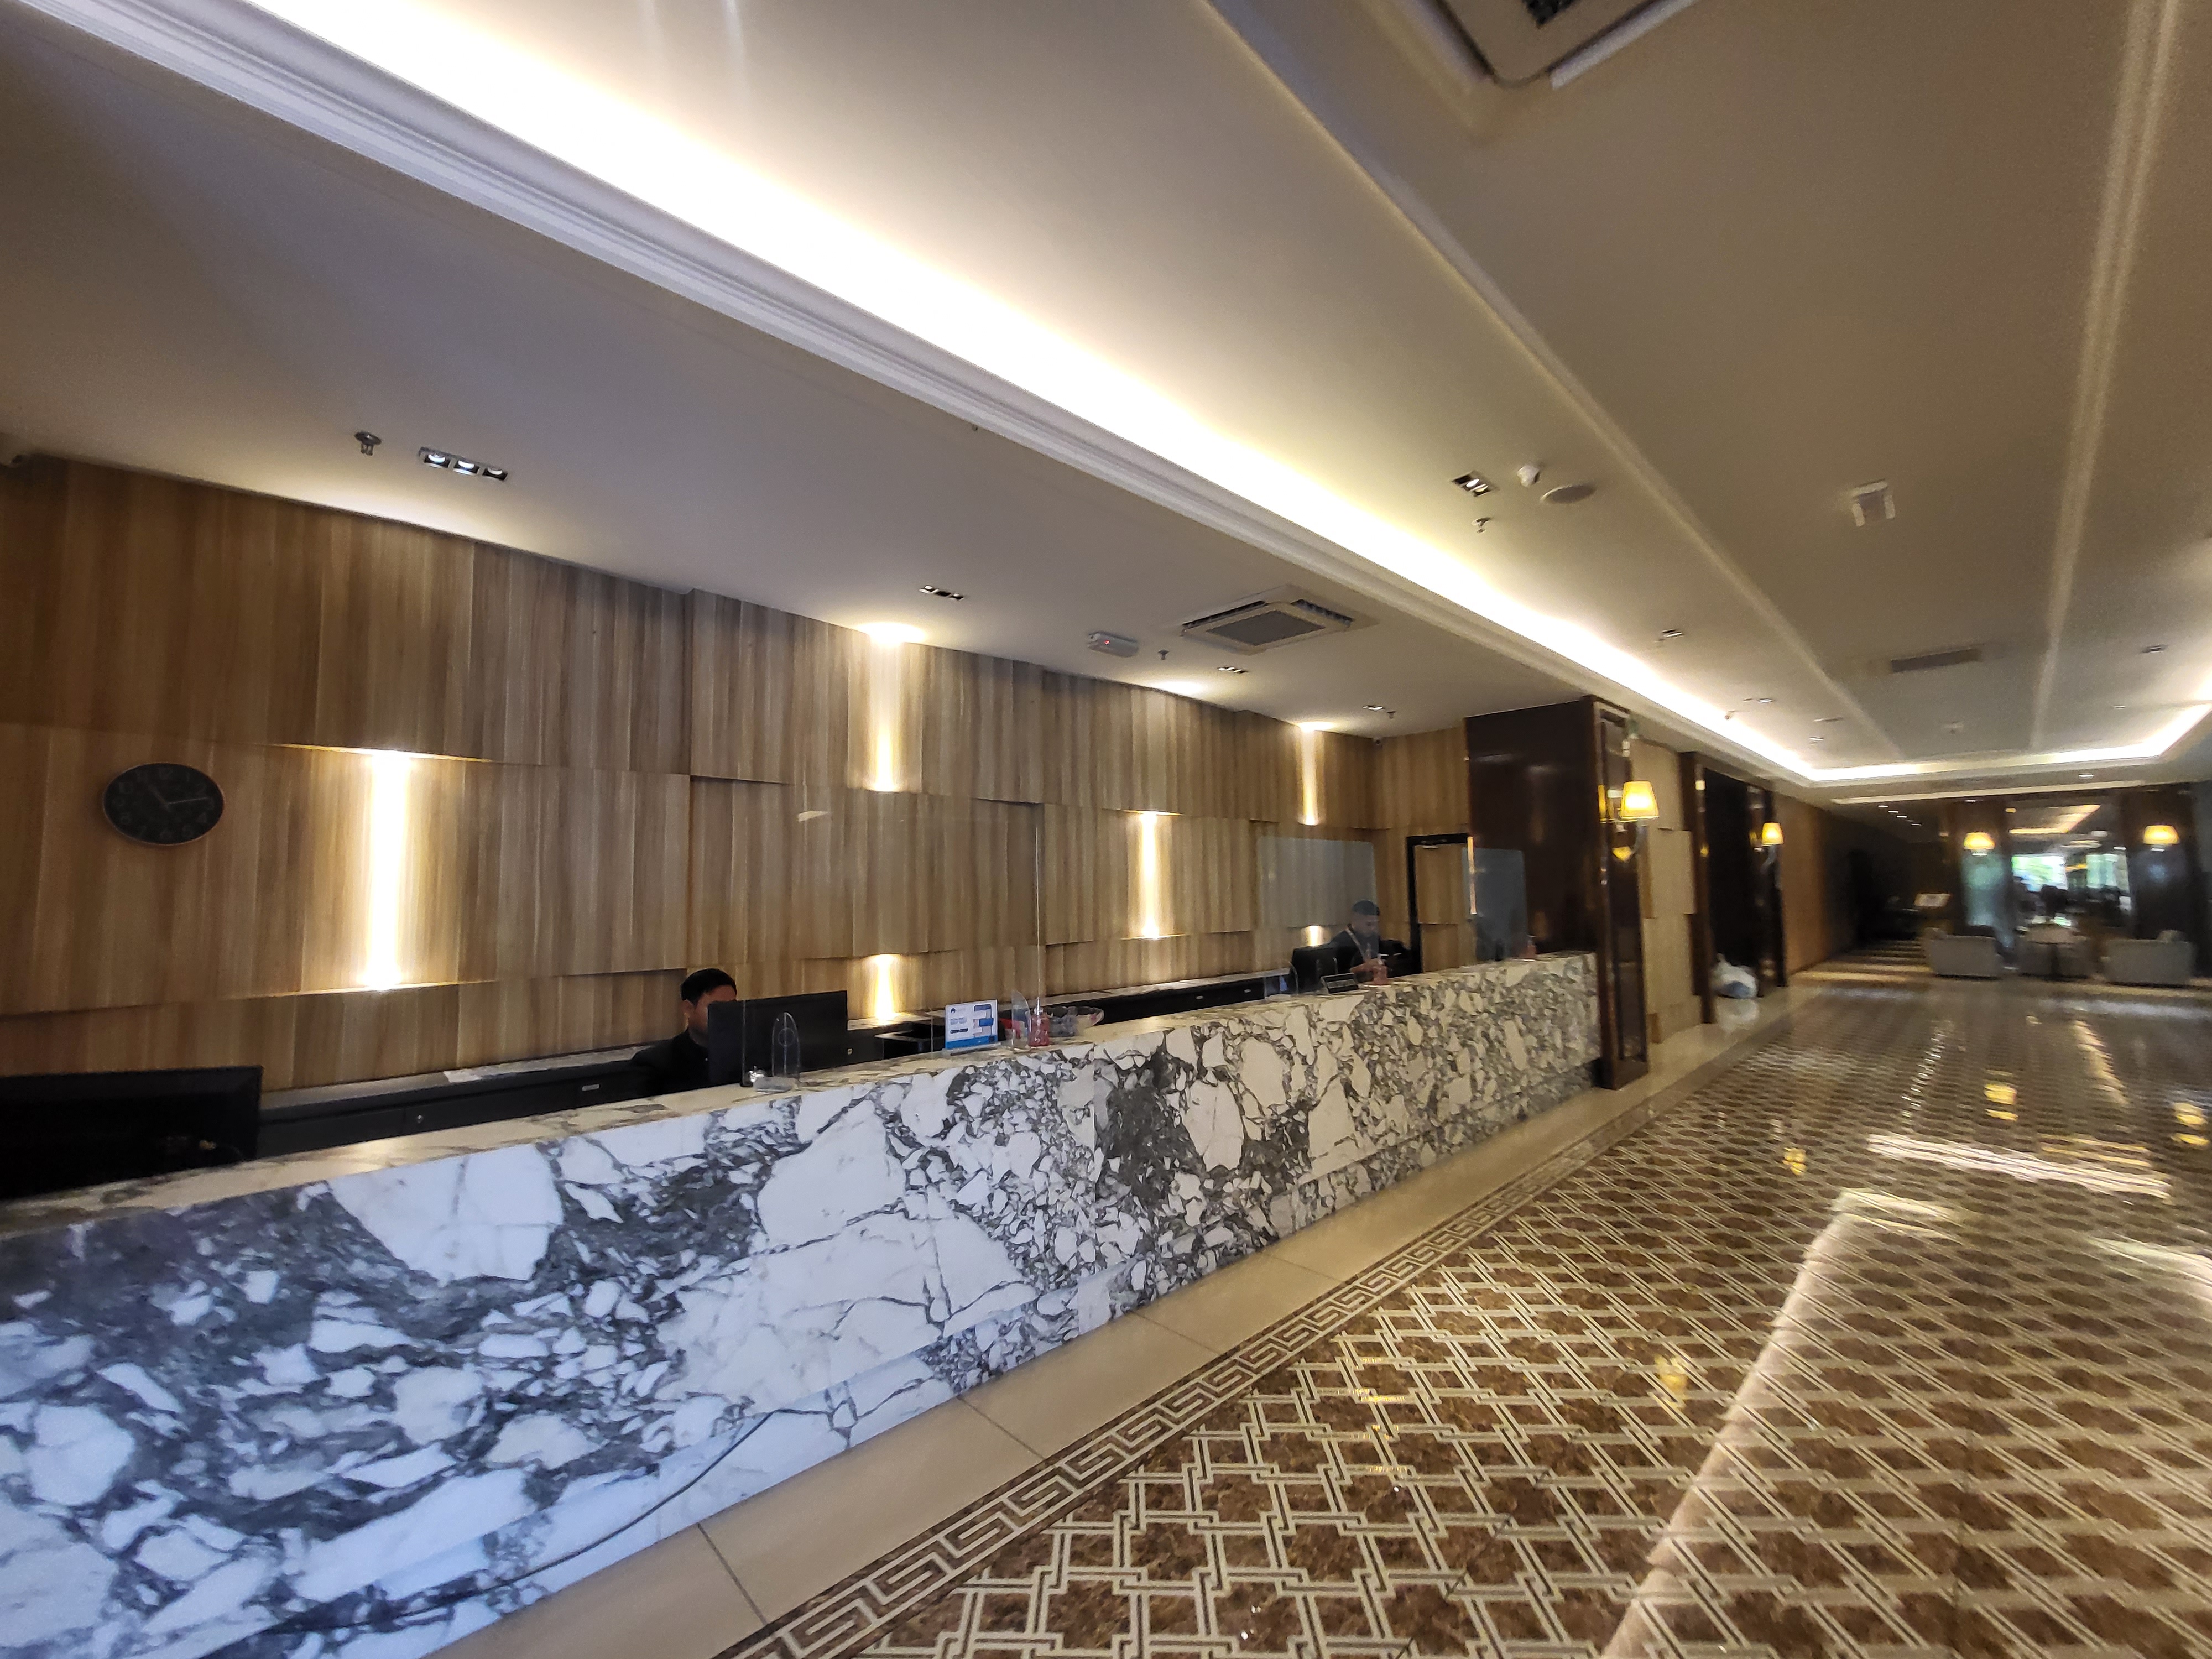 [쿠알라룸푸르] 르베뉴(Le'venue Hotel)호텔(4성급) 스타필드(27홀)골프장(VIP)